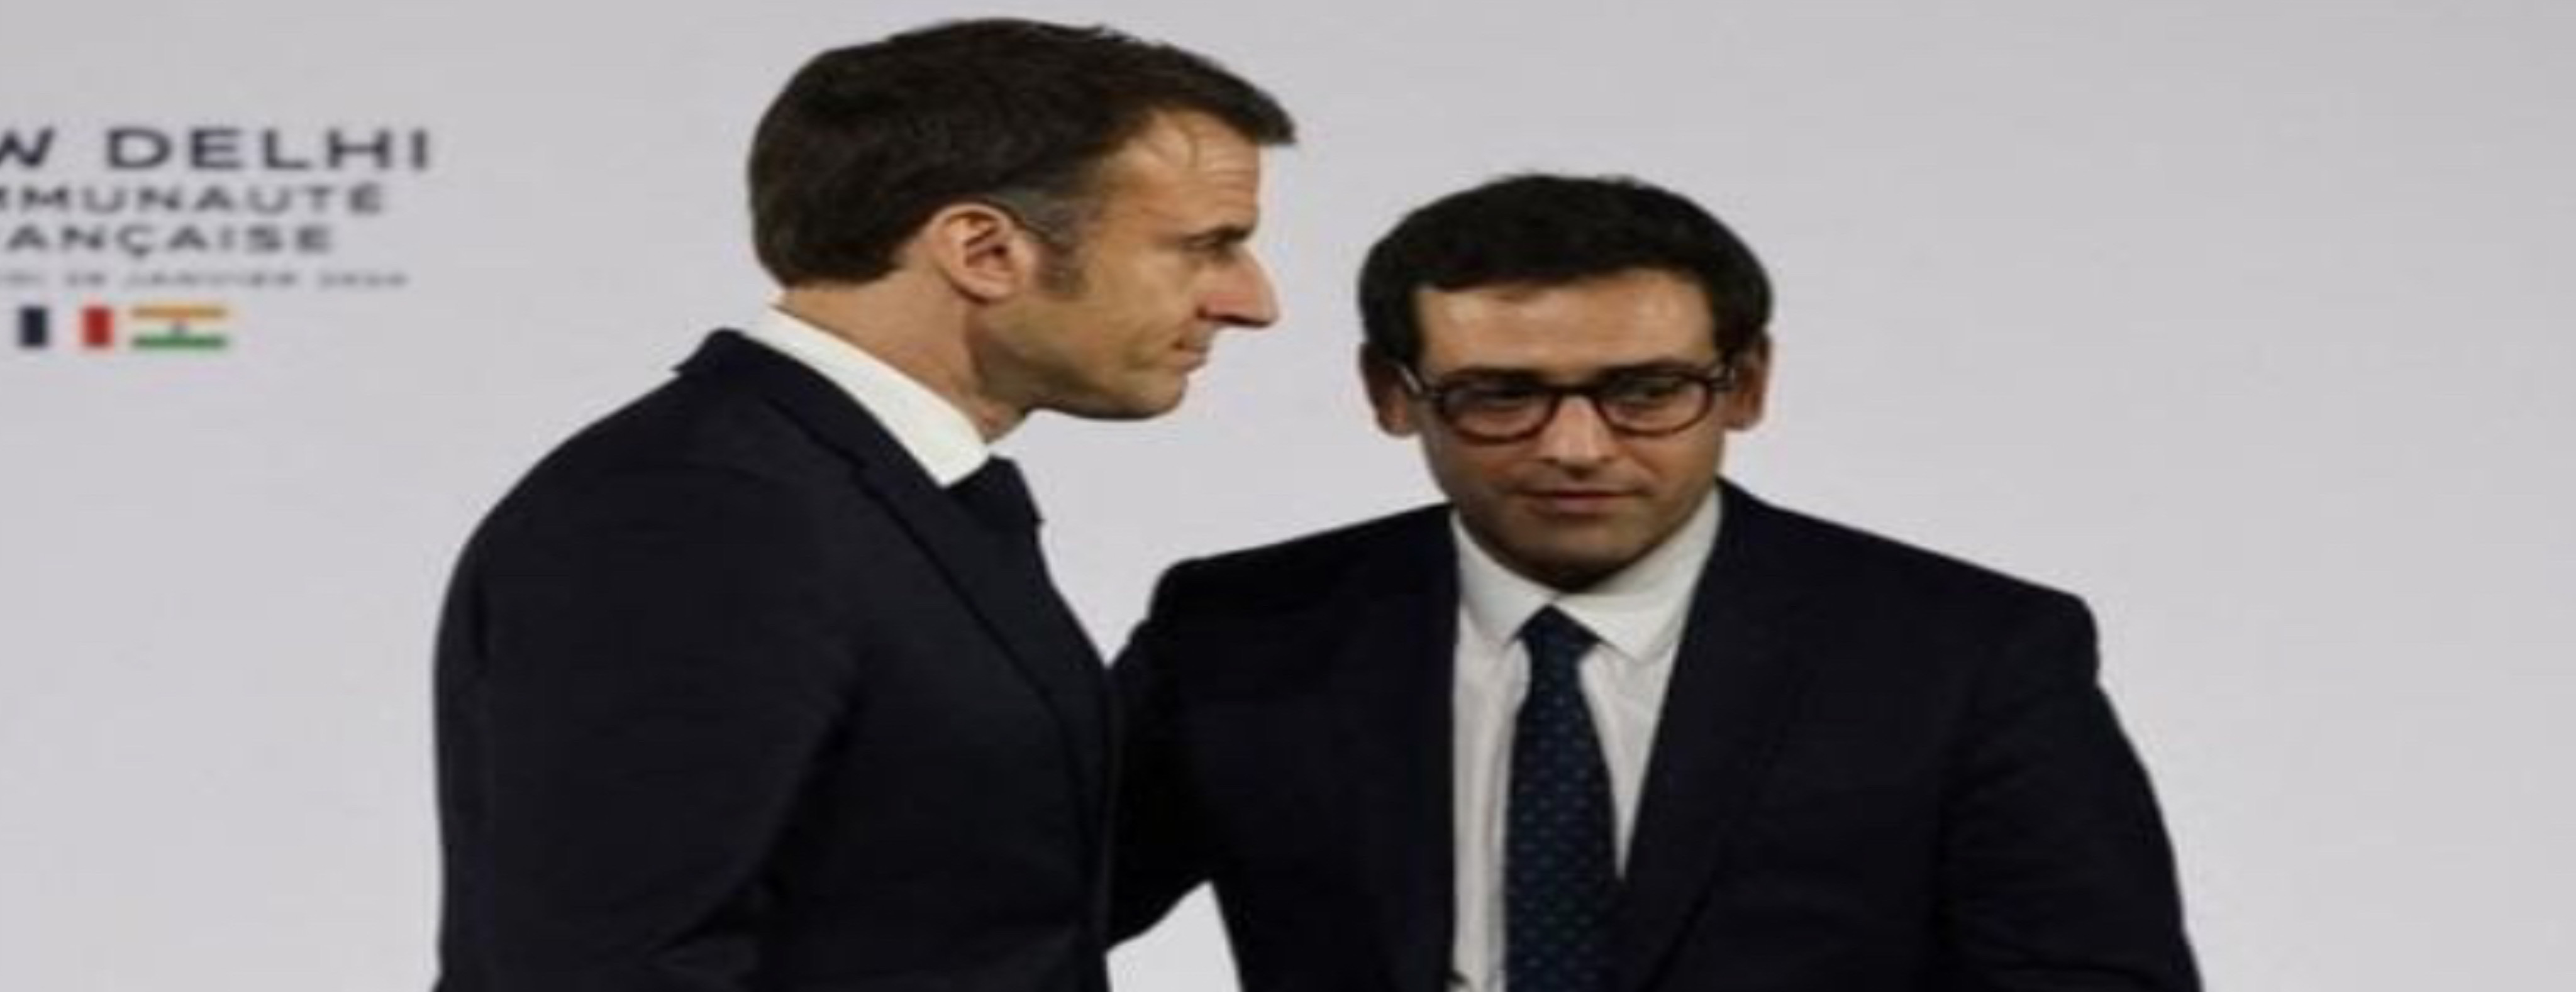 وزير خارجية فرنسا يكشف عن طلب لماكرون بخصوص العلاقة مع المغرب